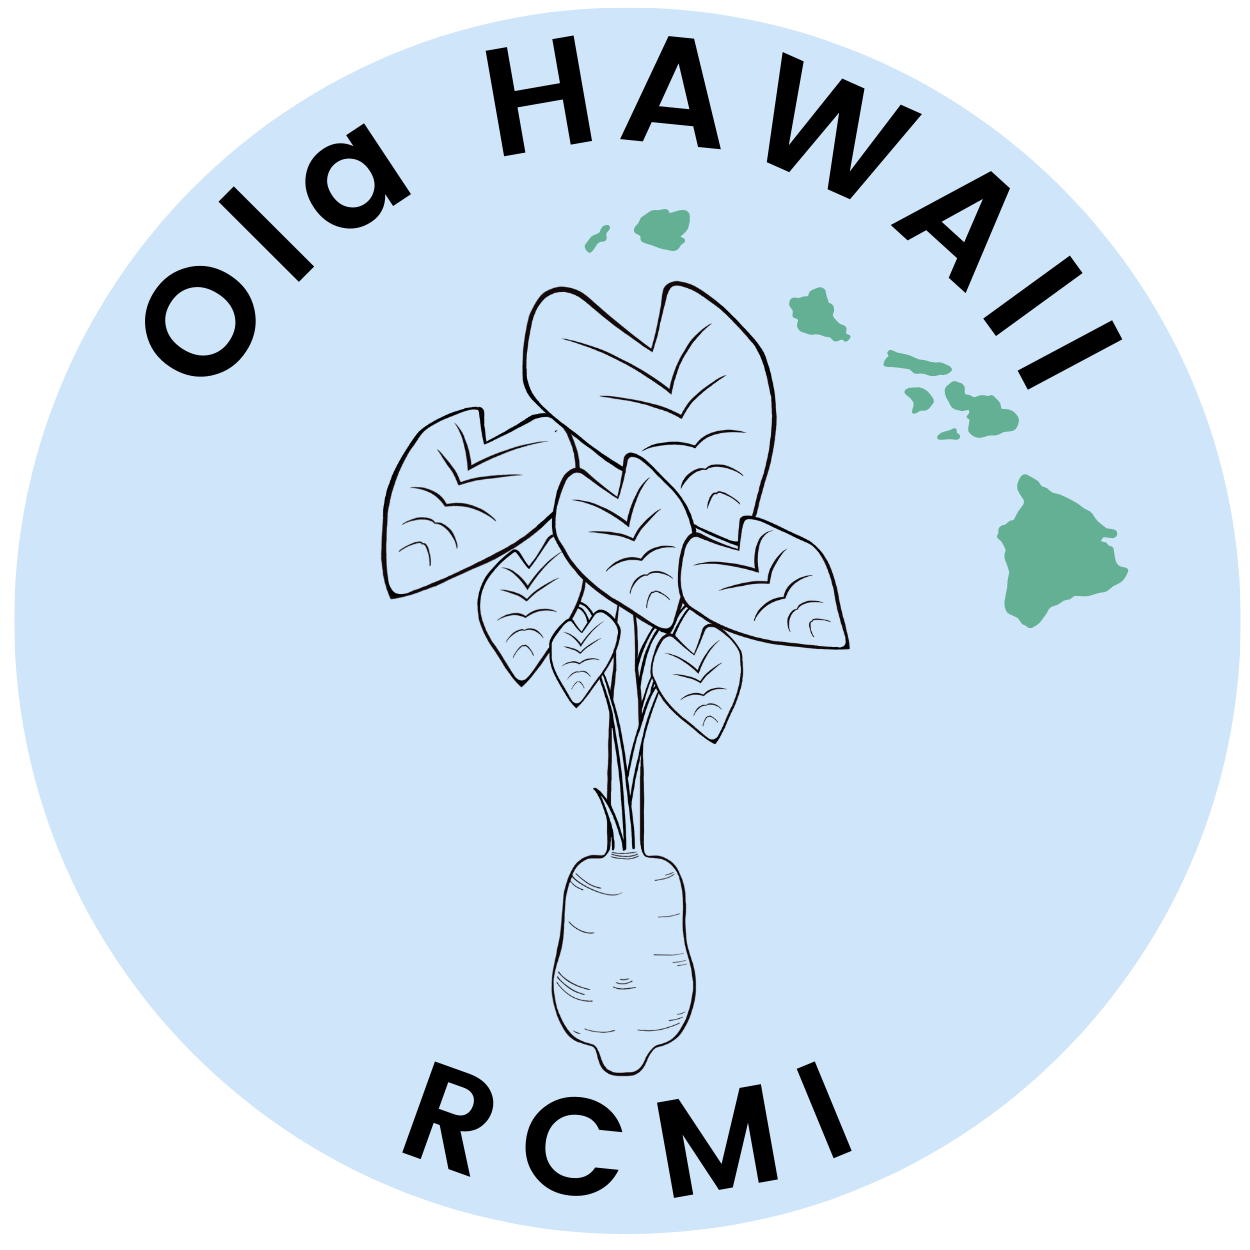 Ola HAWAII